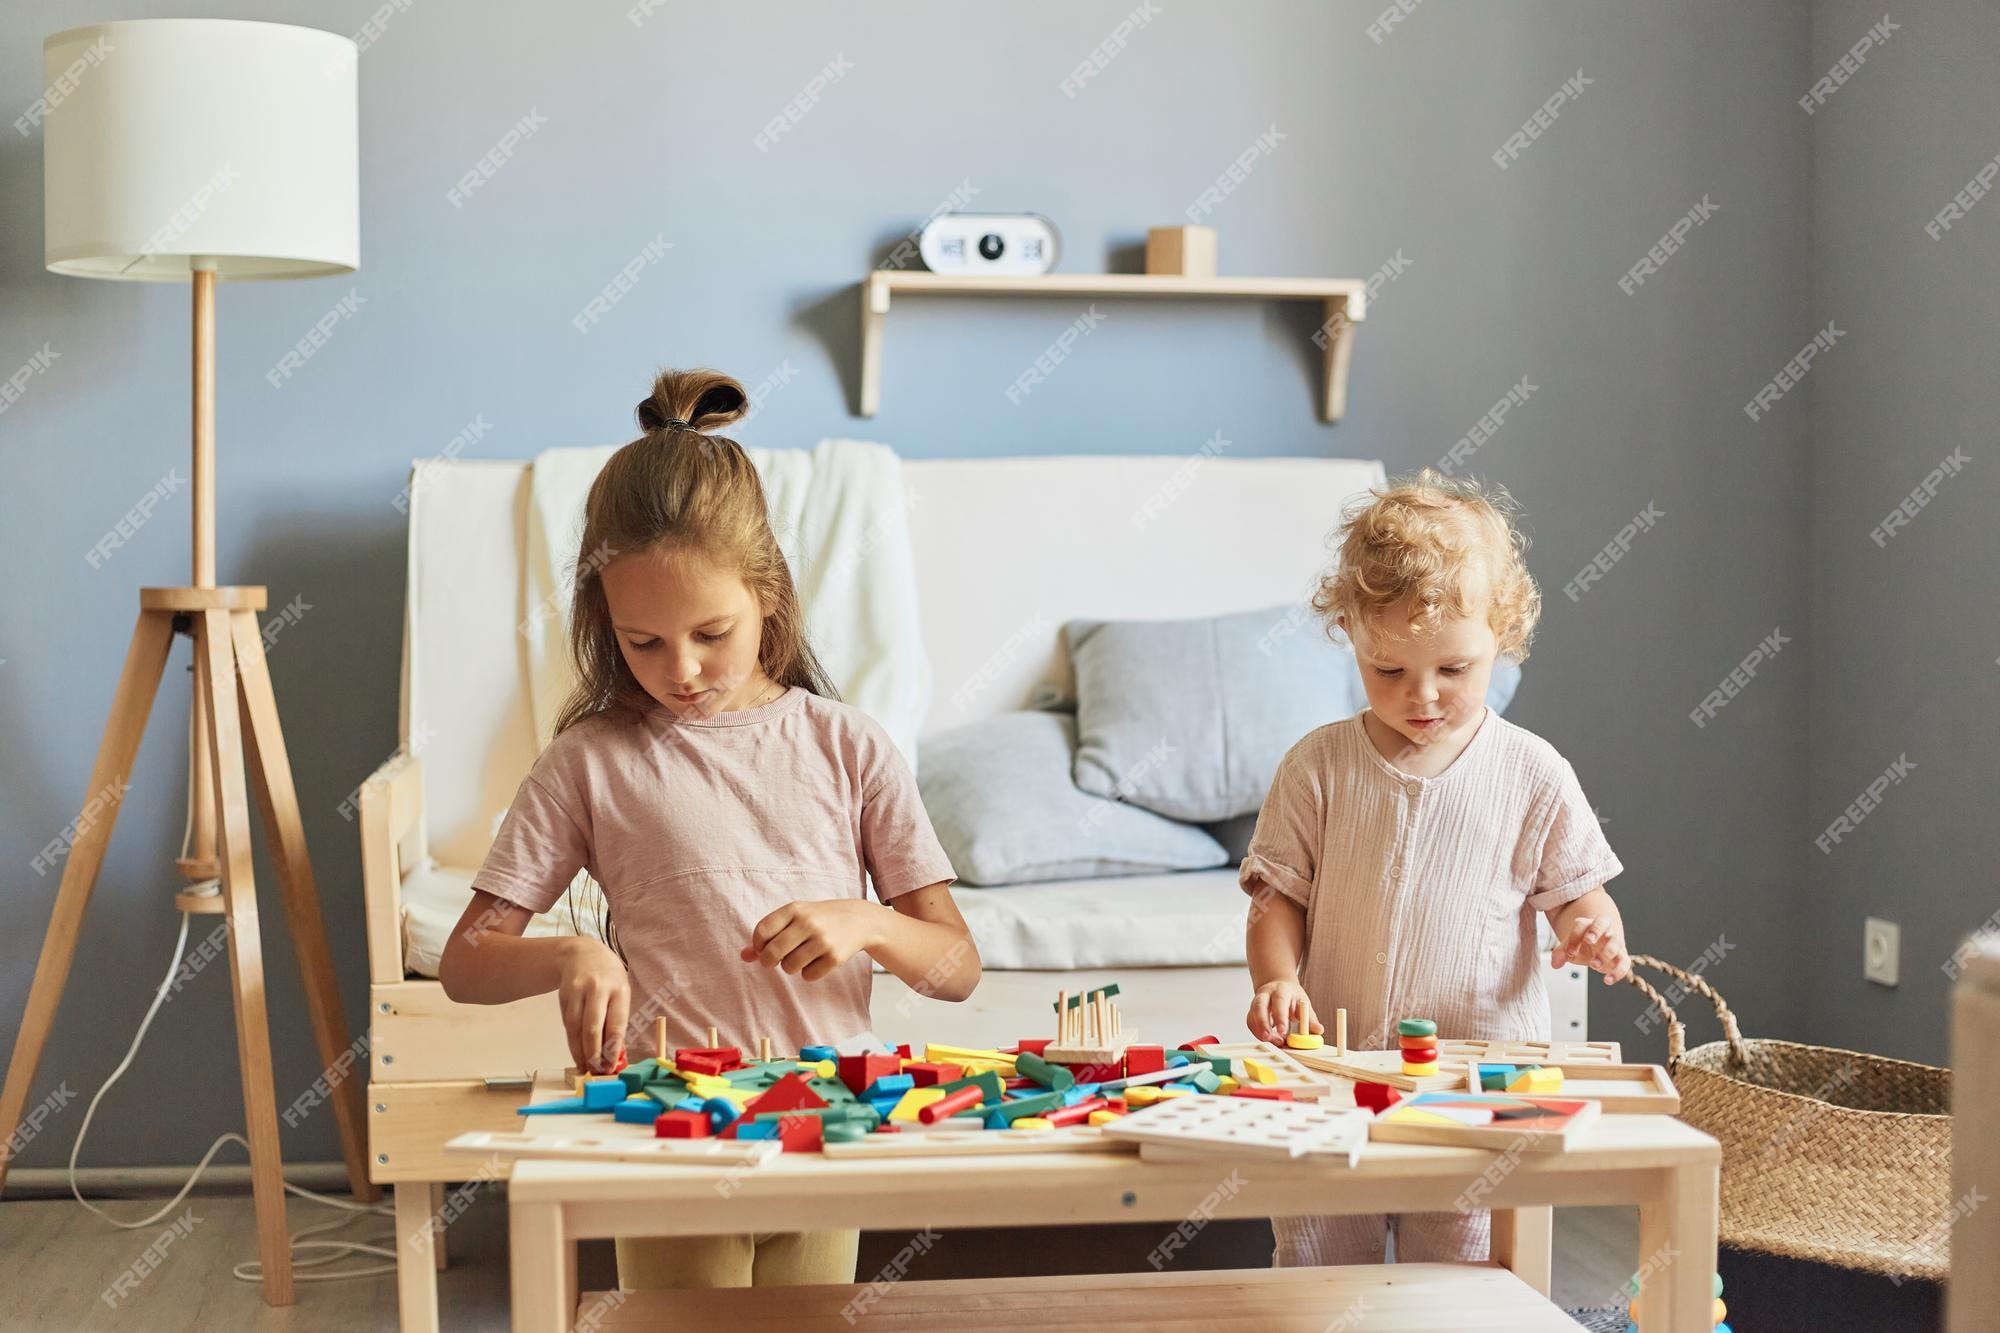 Habilidades lógicas da criança em idade pré-escolar brincadeira de  imaginação criativa jogos educativos divertidos brincadeira ativa para  crianças meninas brincando com brinquedos educativos no interior de casa